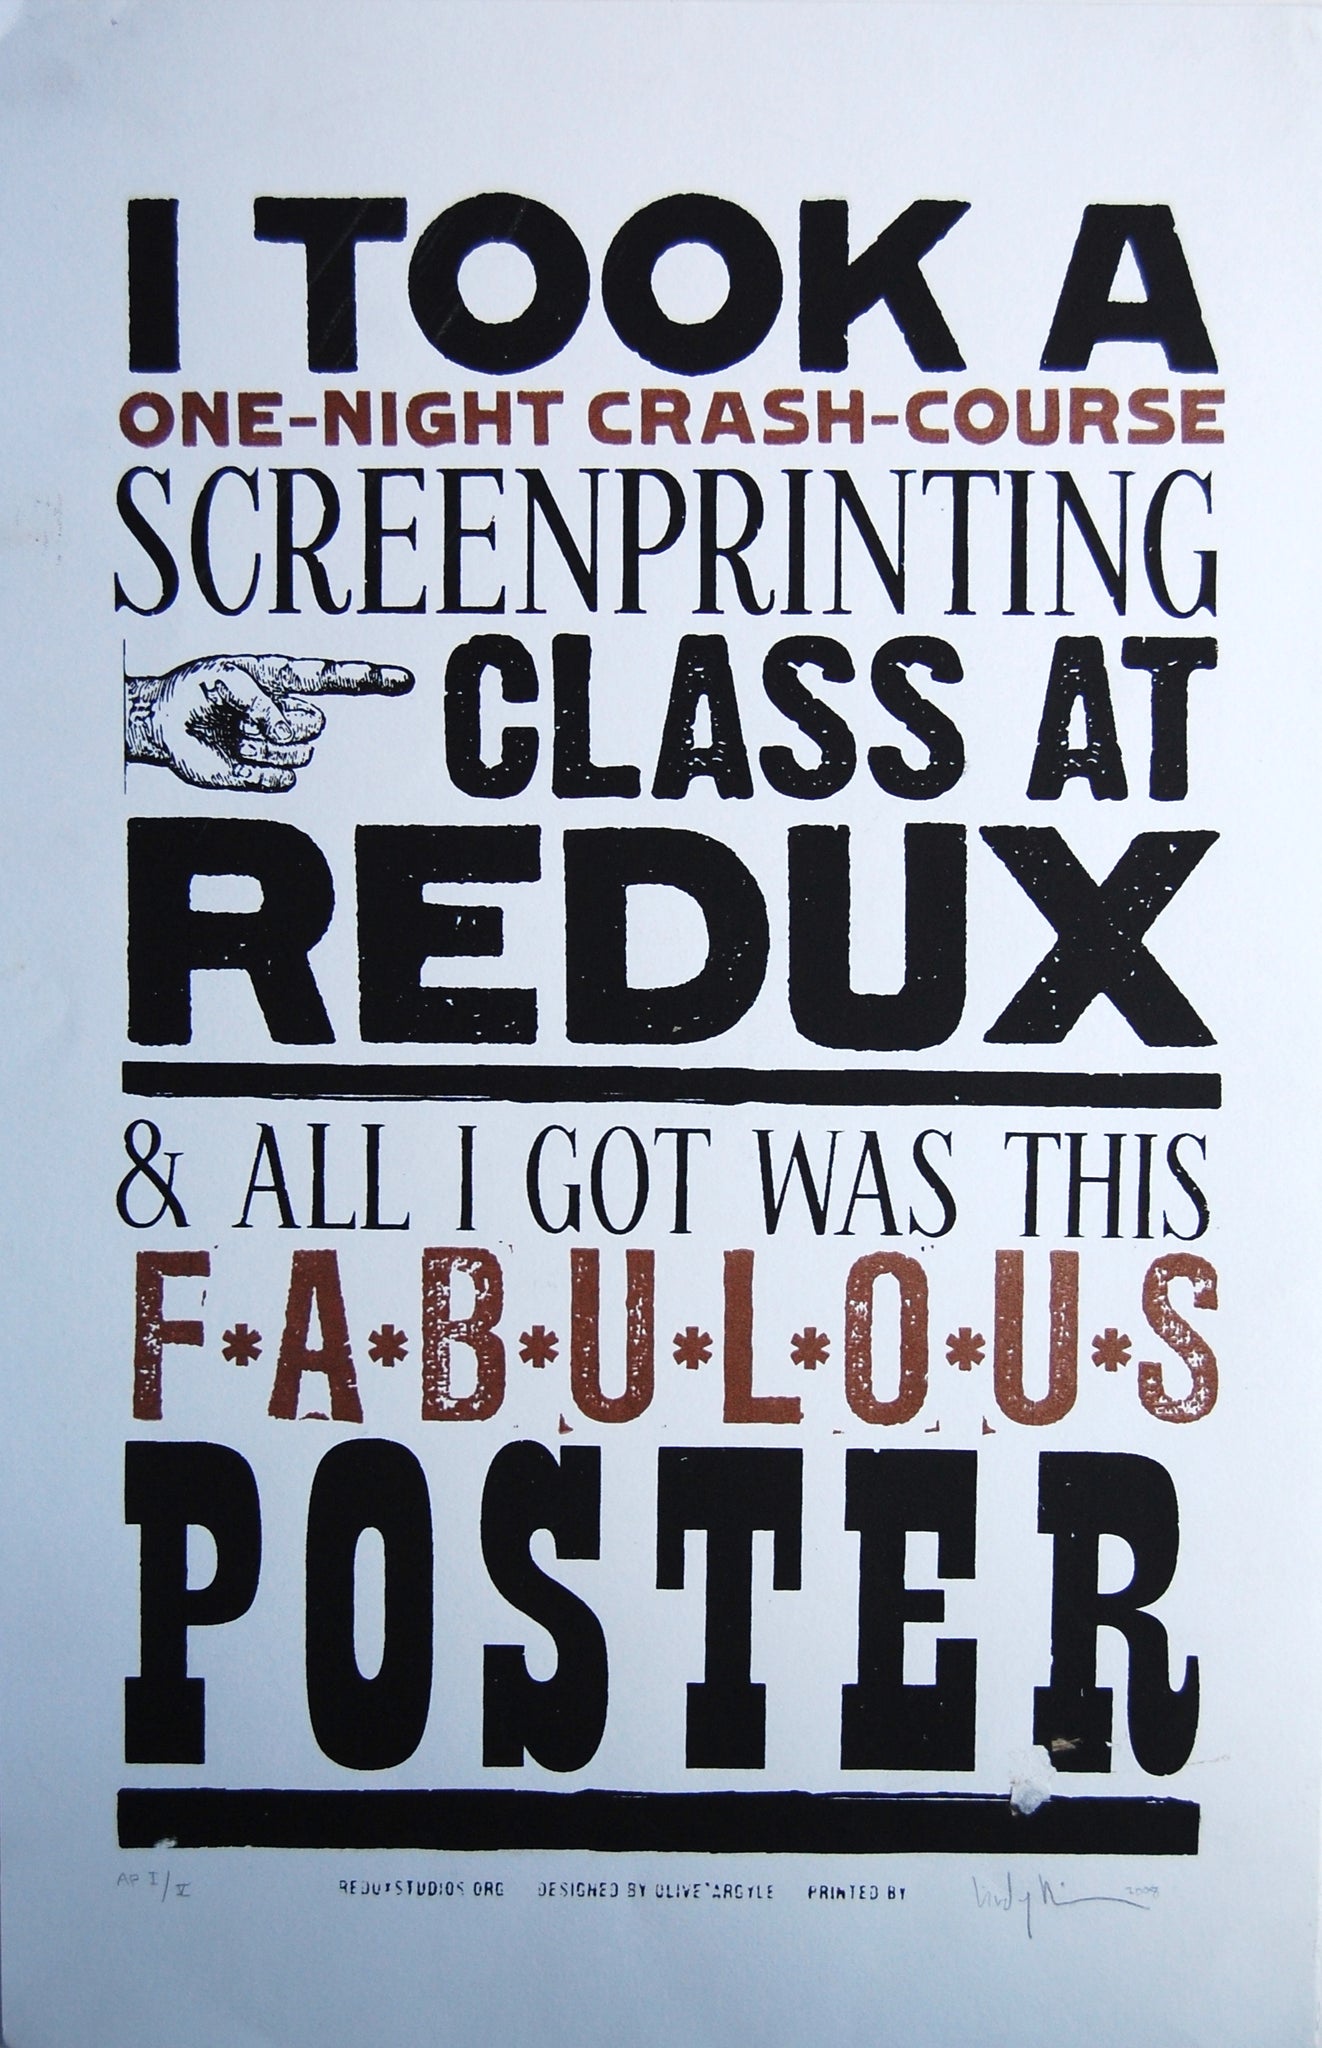 Took a Redux Class poster